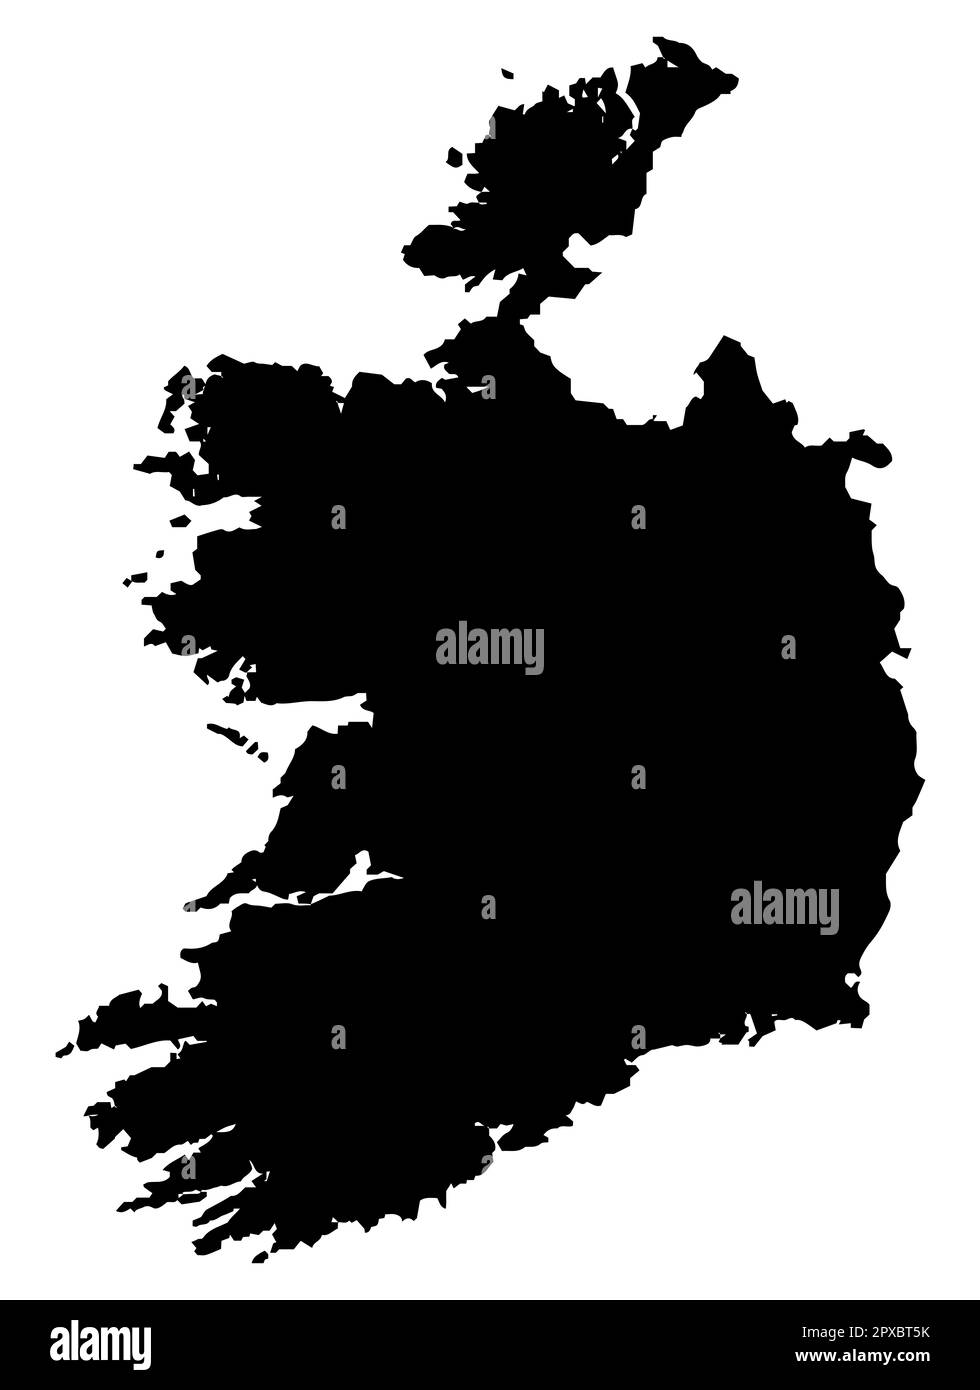 Una mappa delle silhouette di Eire o dell'Irlanda del Sud in bianco e nero Foto Stock